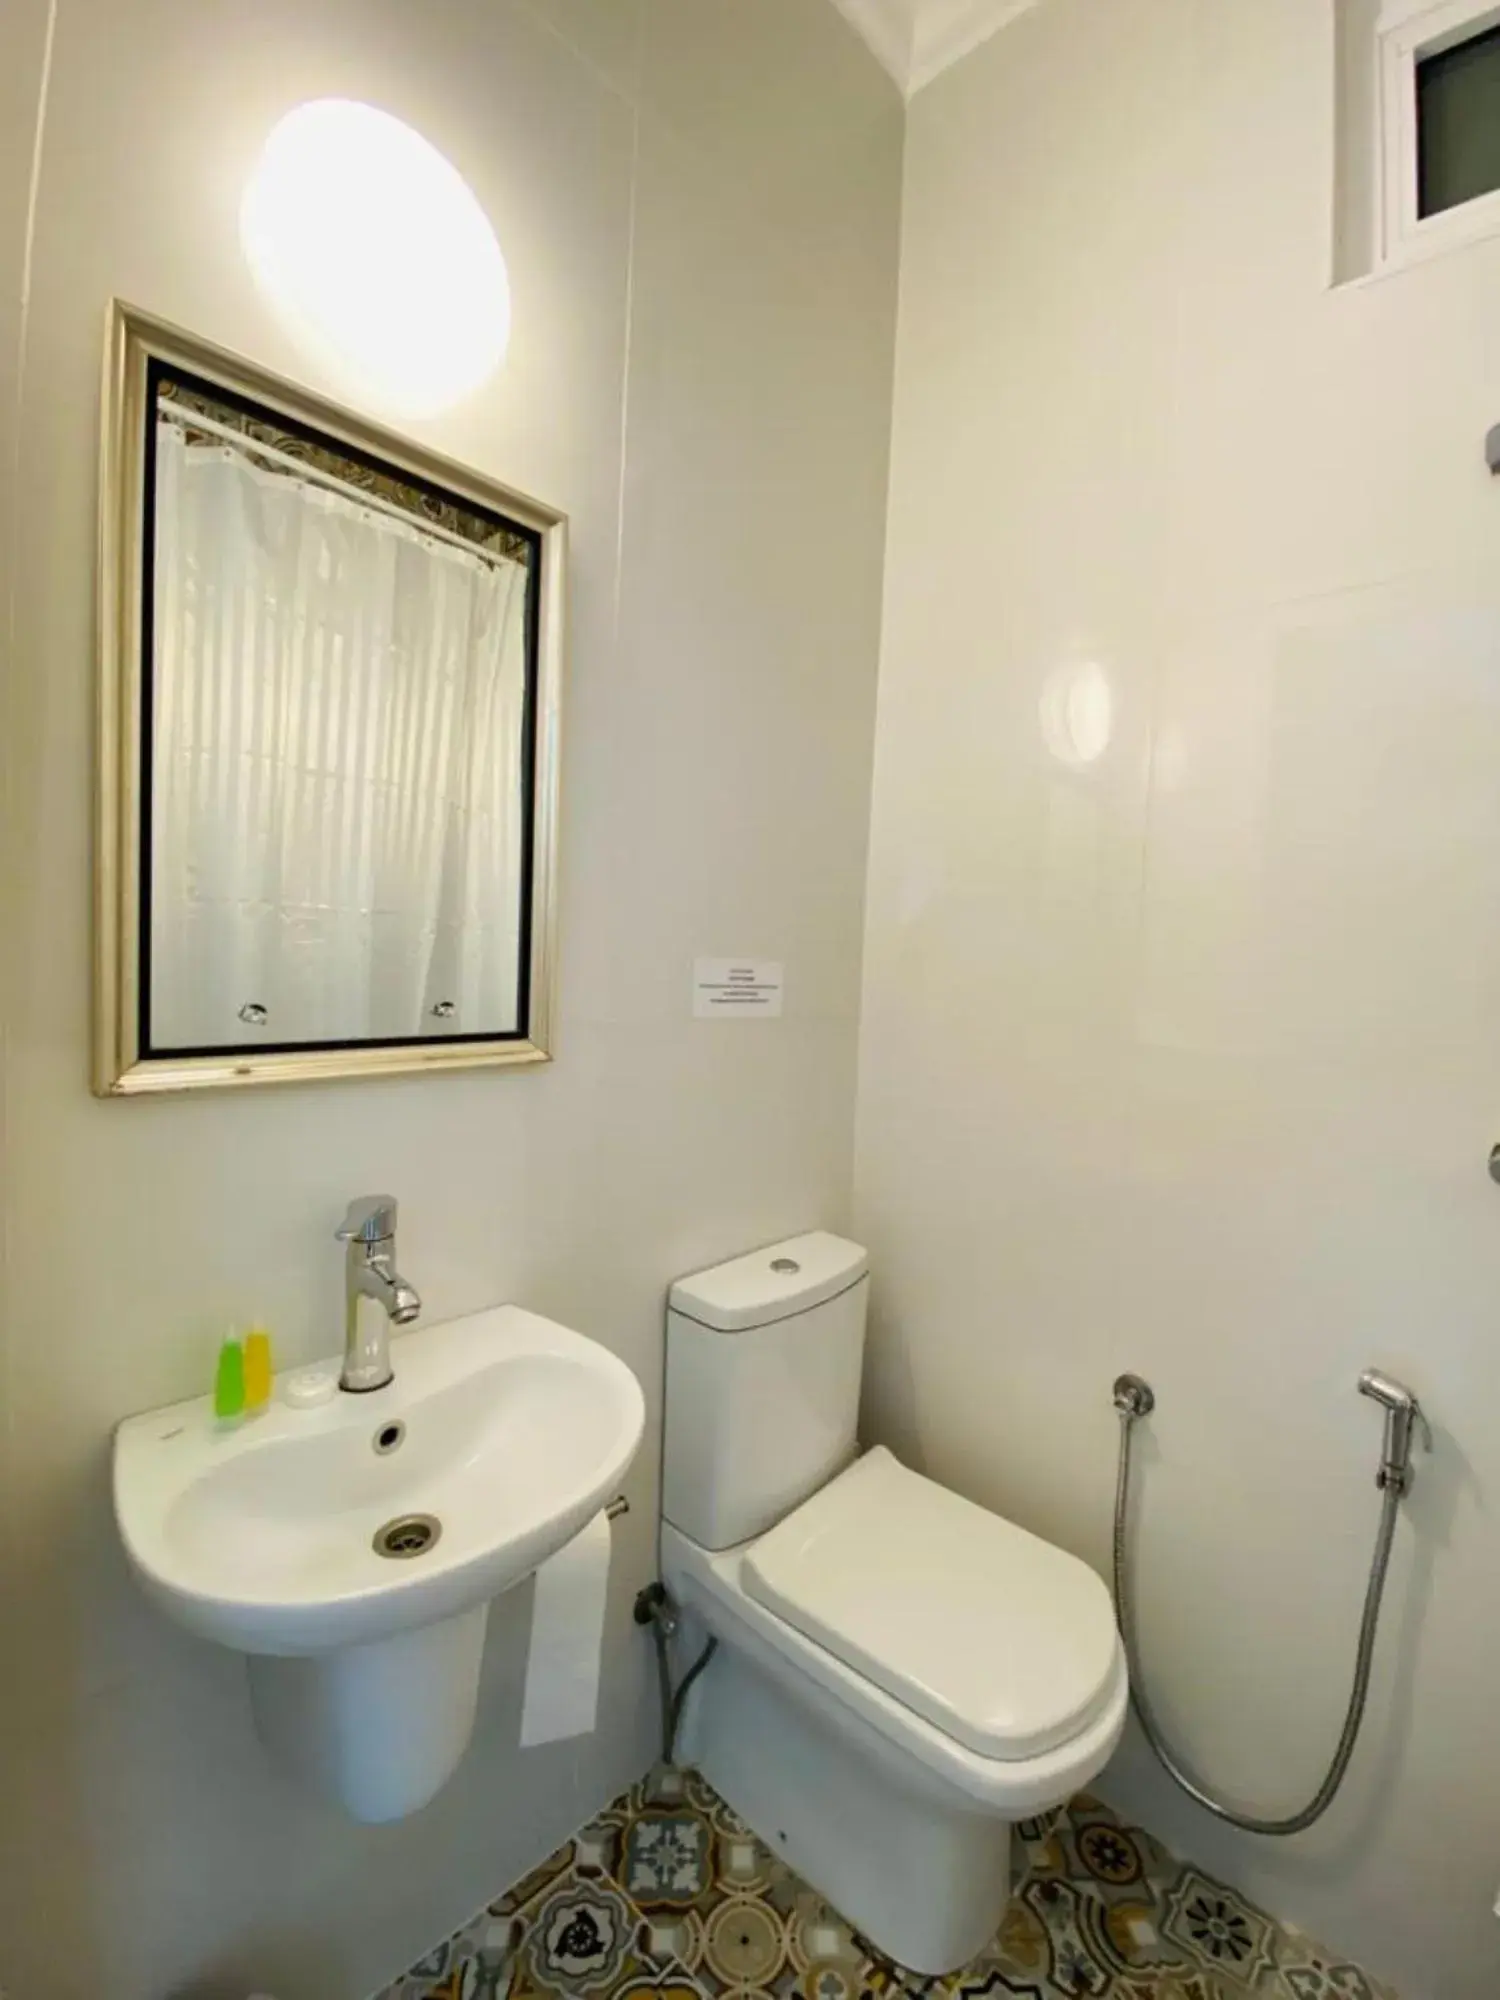 Bathroom in ARABESQUE HOTEL